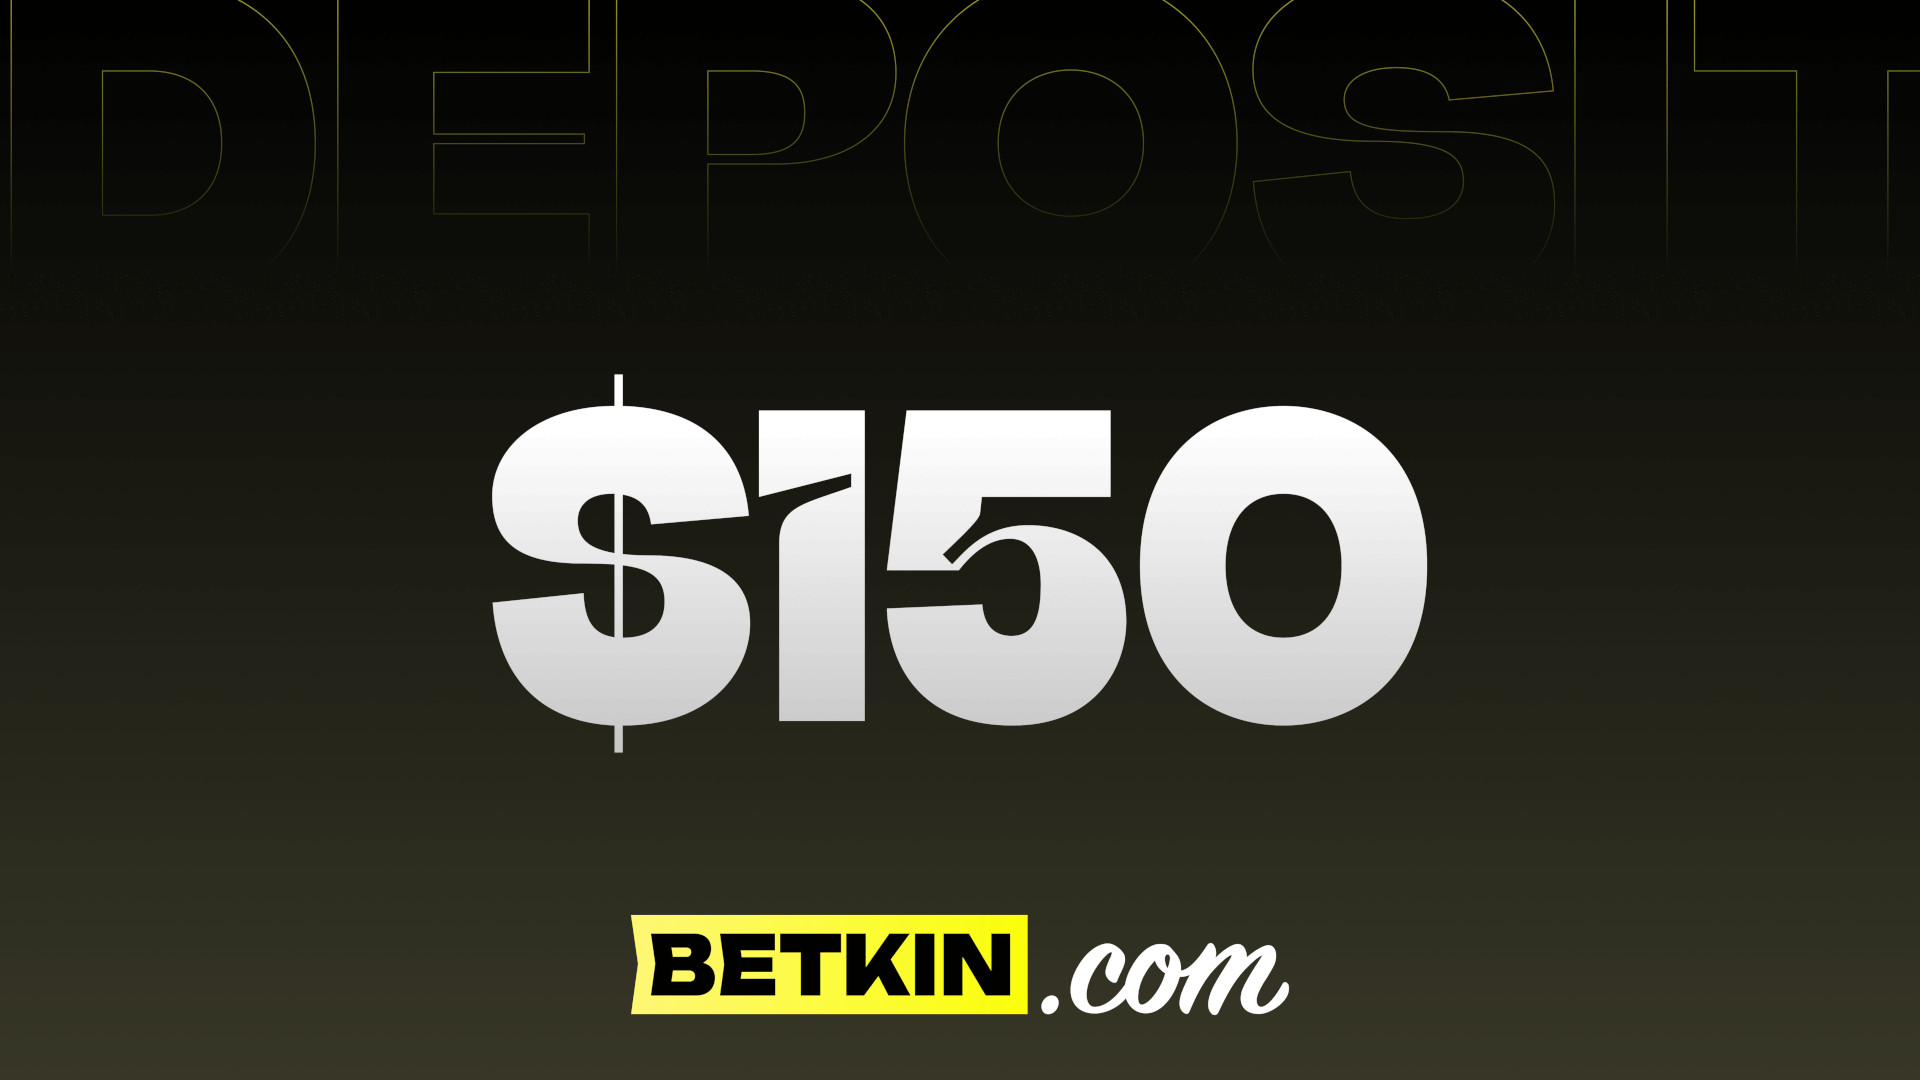 Betkin $150 Coupon 166.96 $